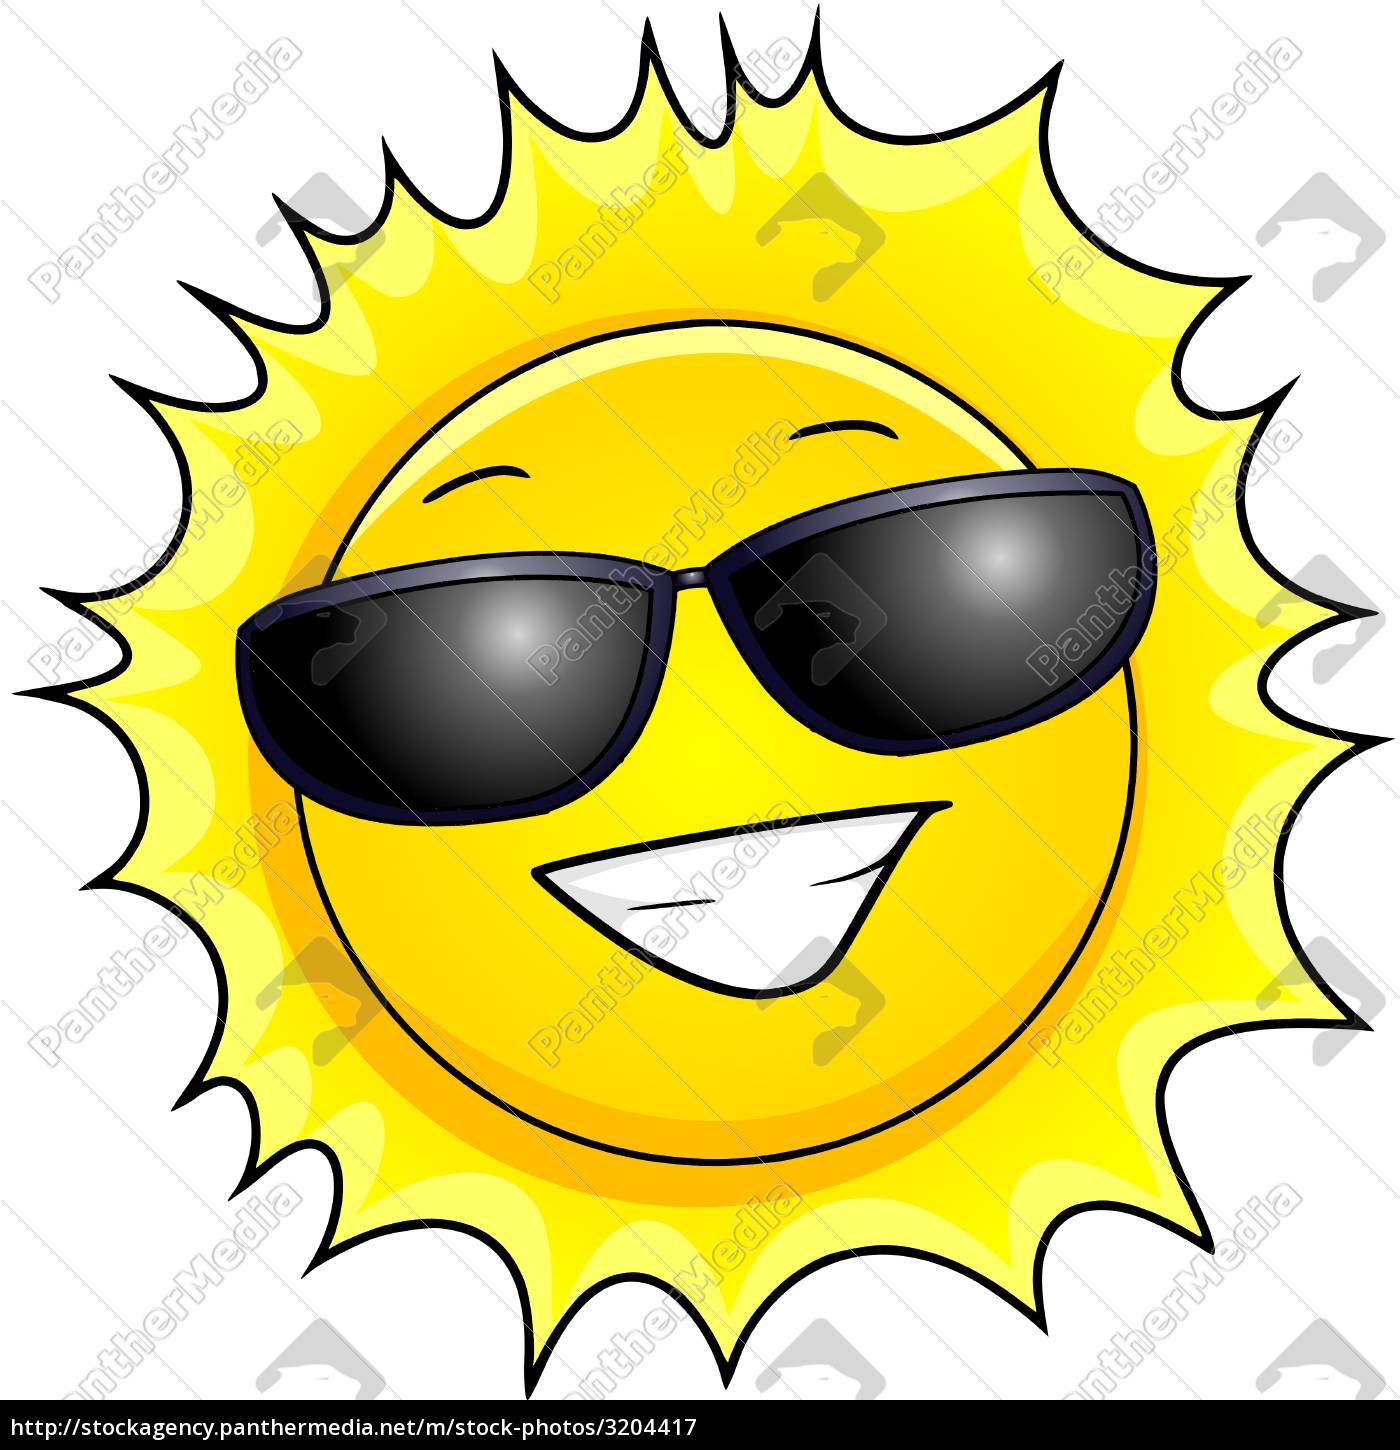 I mængde Tjen omhyggelig grinende sol med solbriller - Stockphoto #3204417 | PantherMedia  Billedbureau